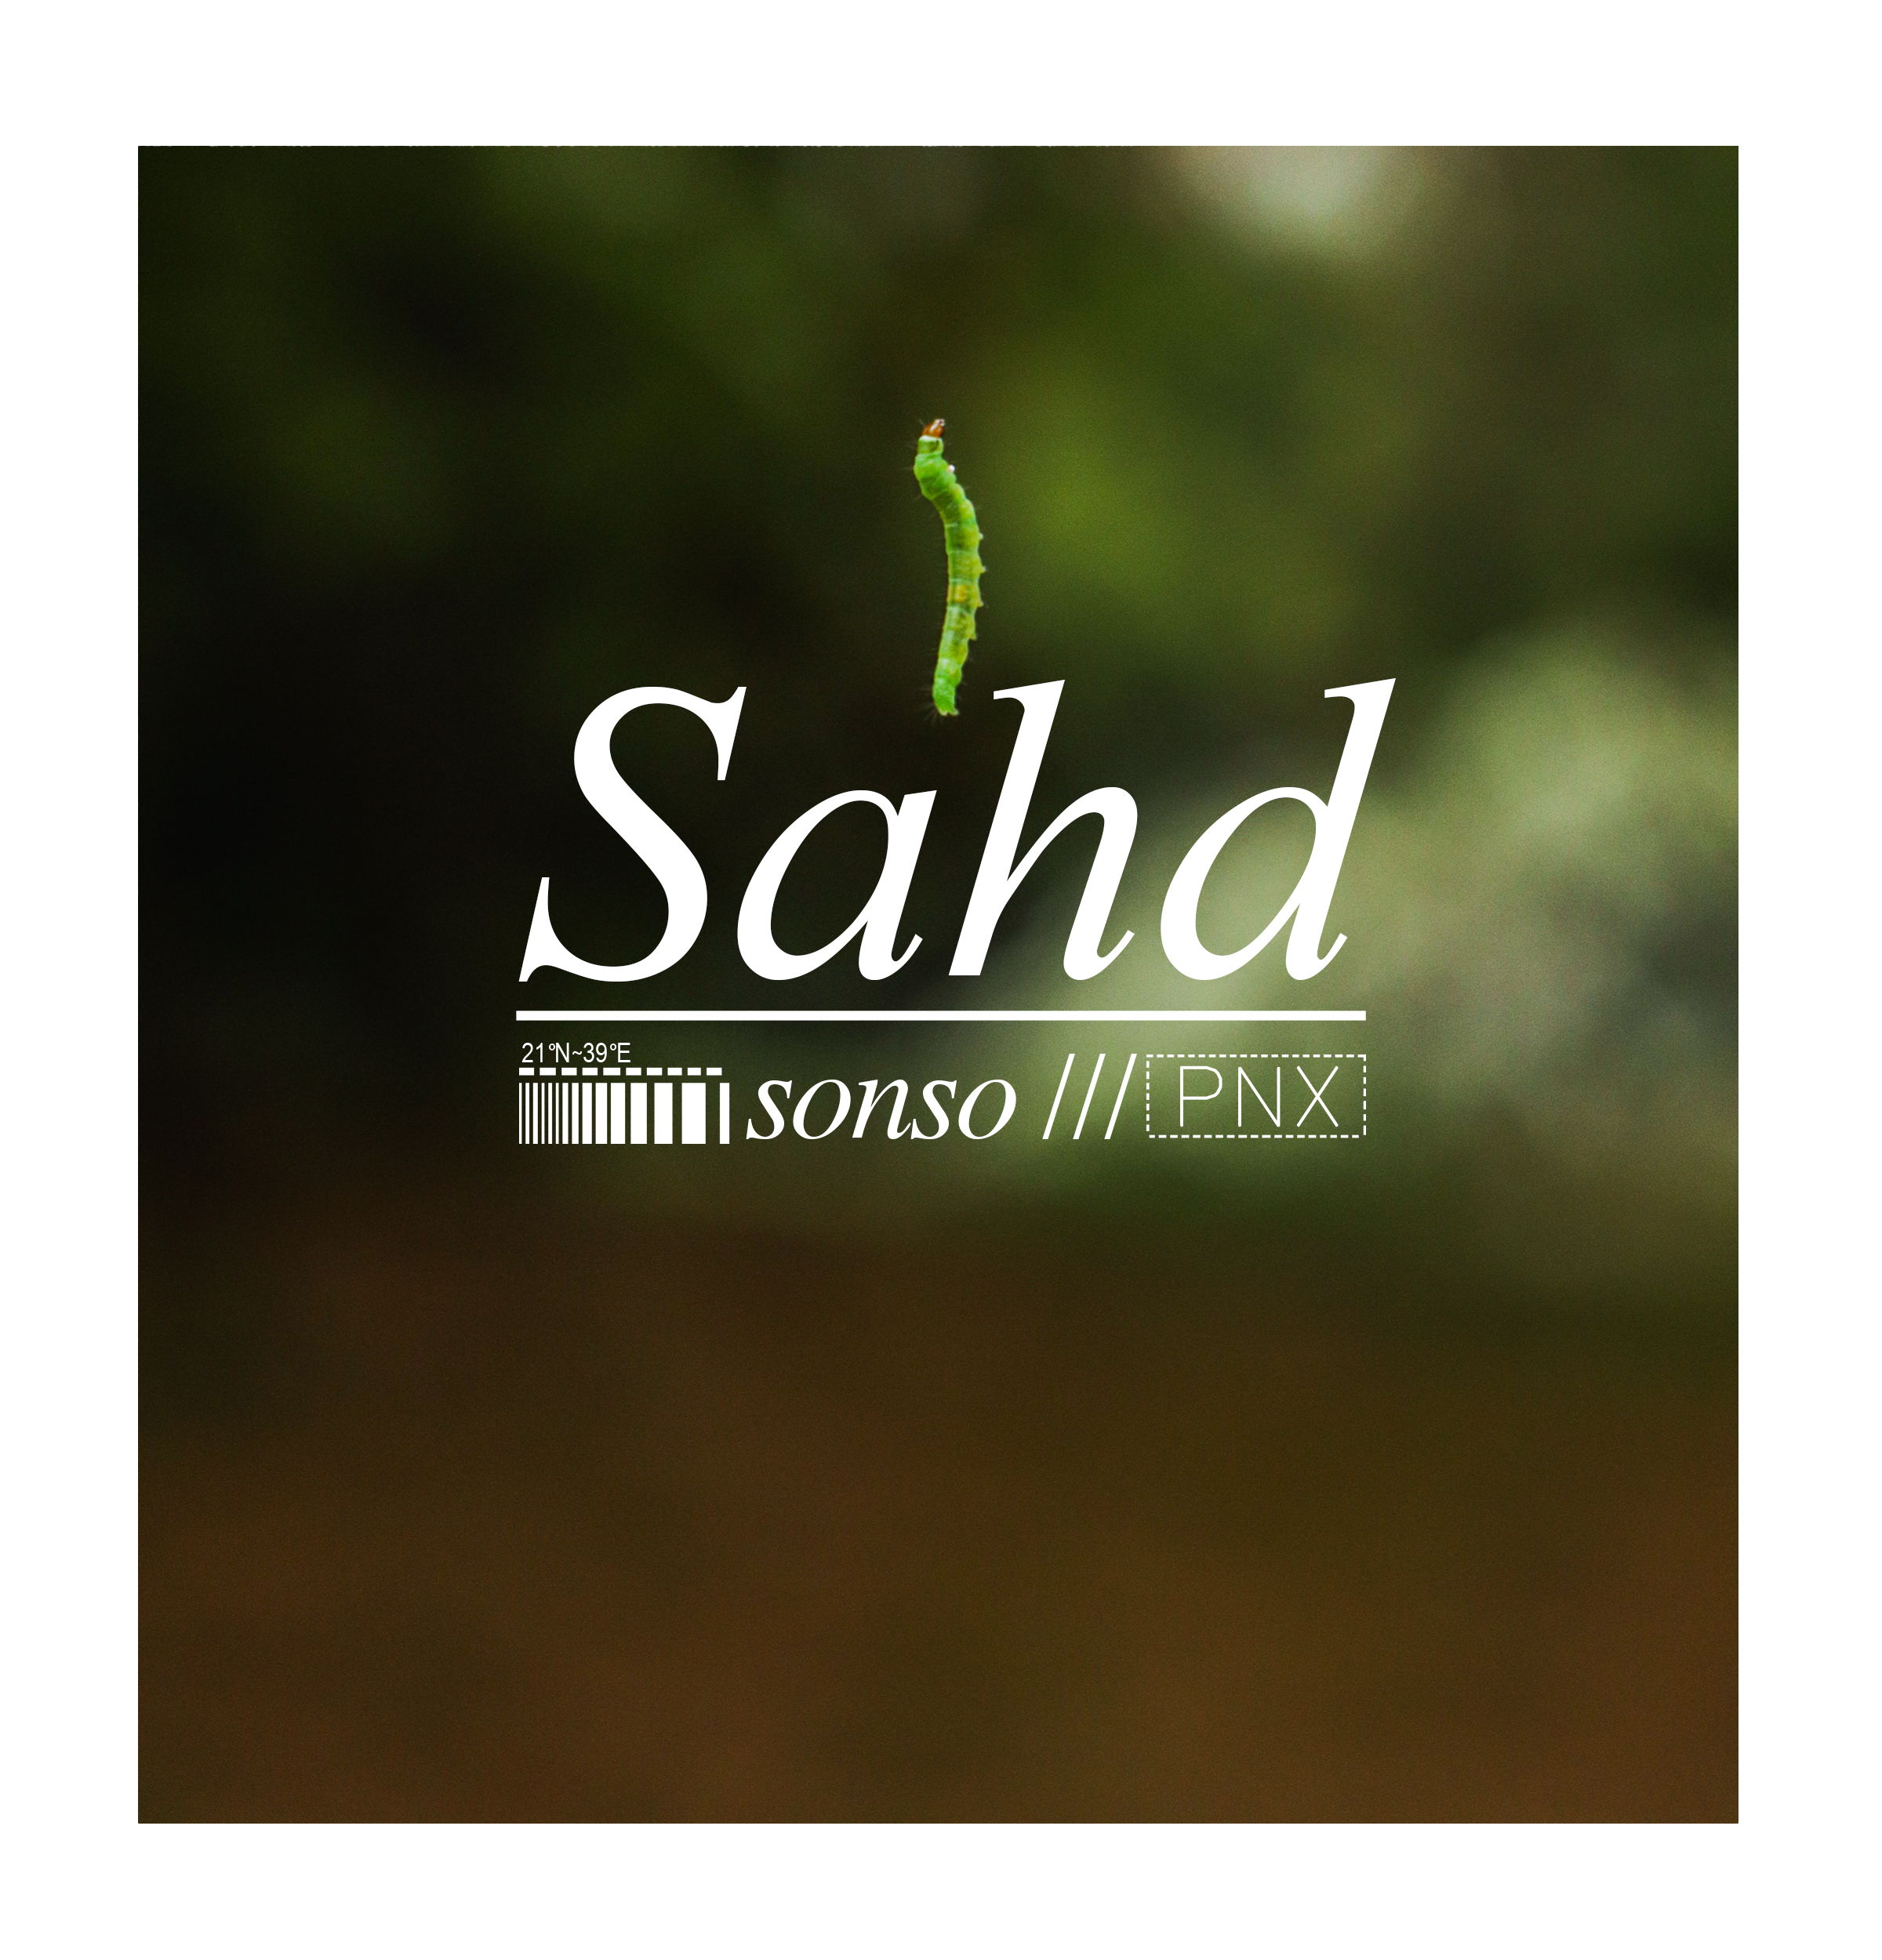 Sahd - Sonso